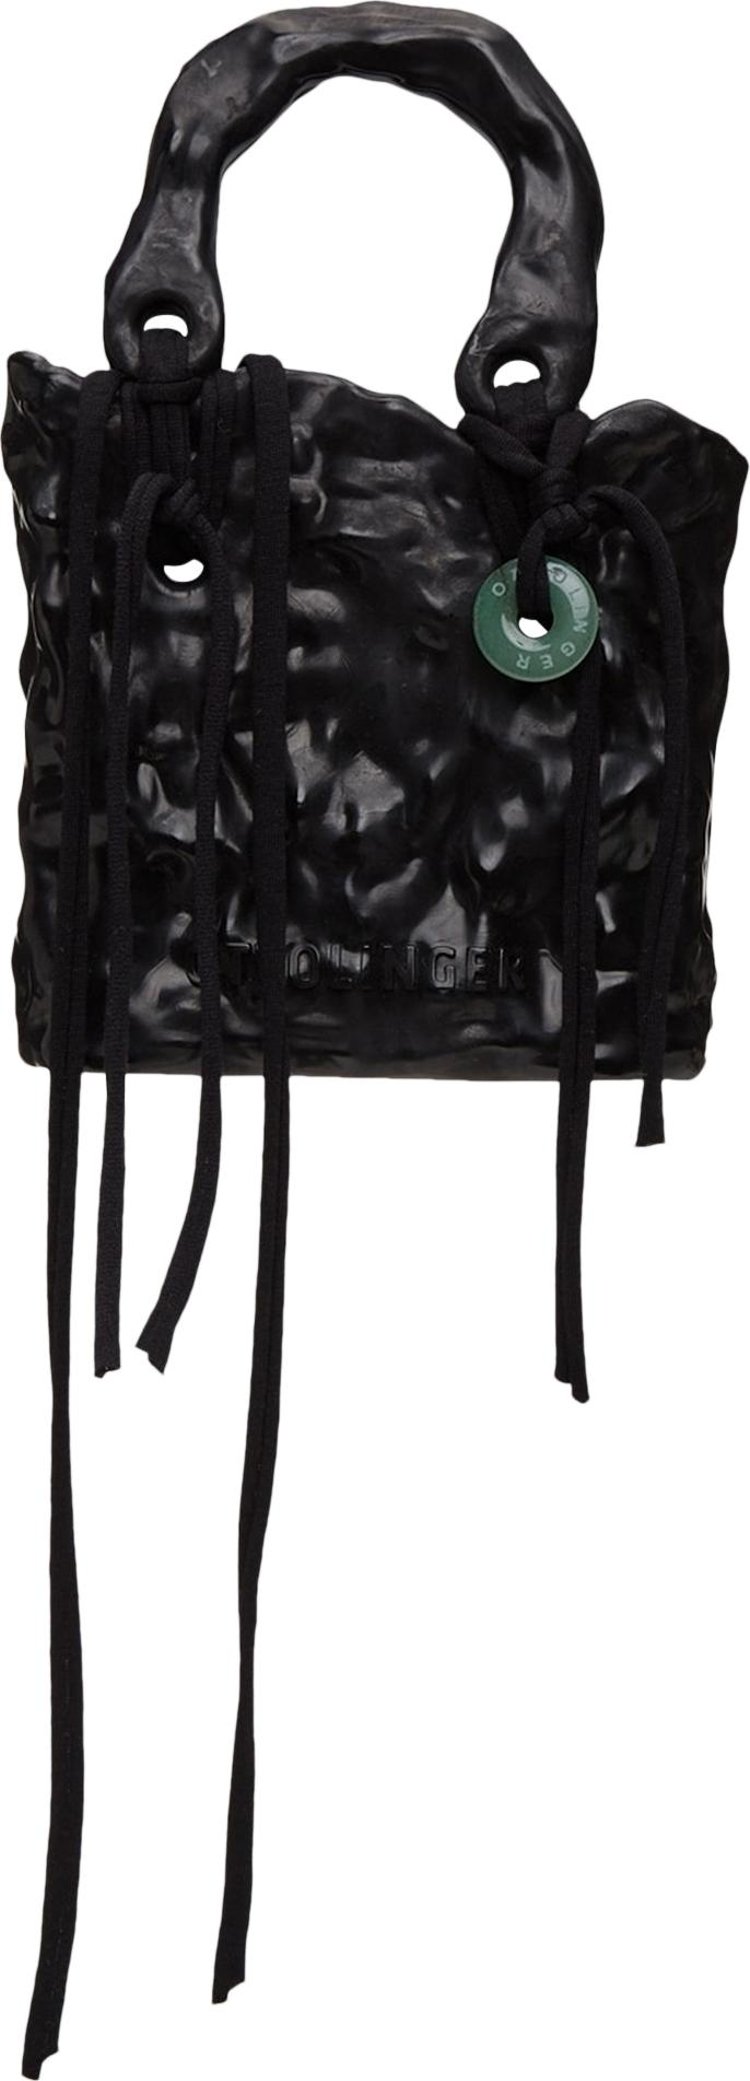 Ottolinger Signature Ceramic Handbag 'Black'